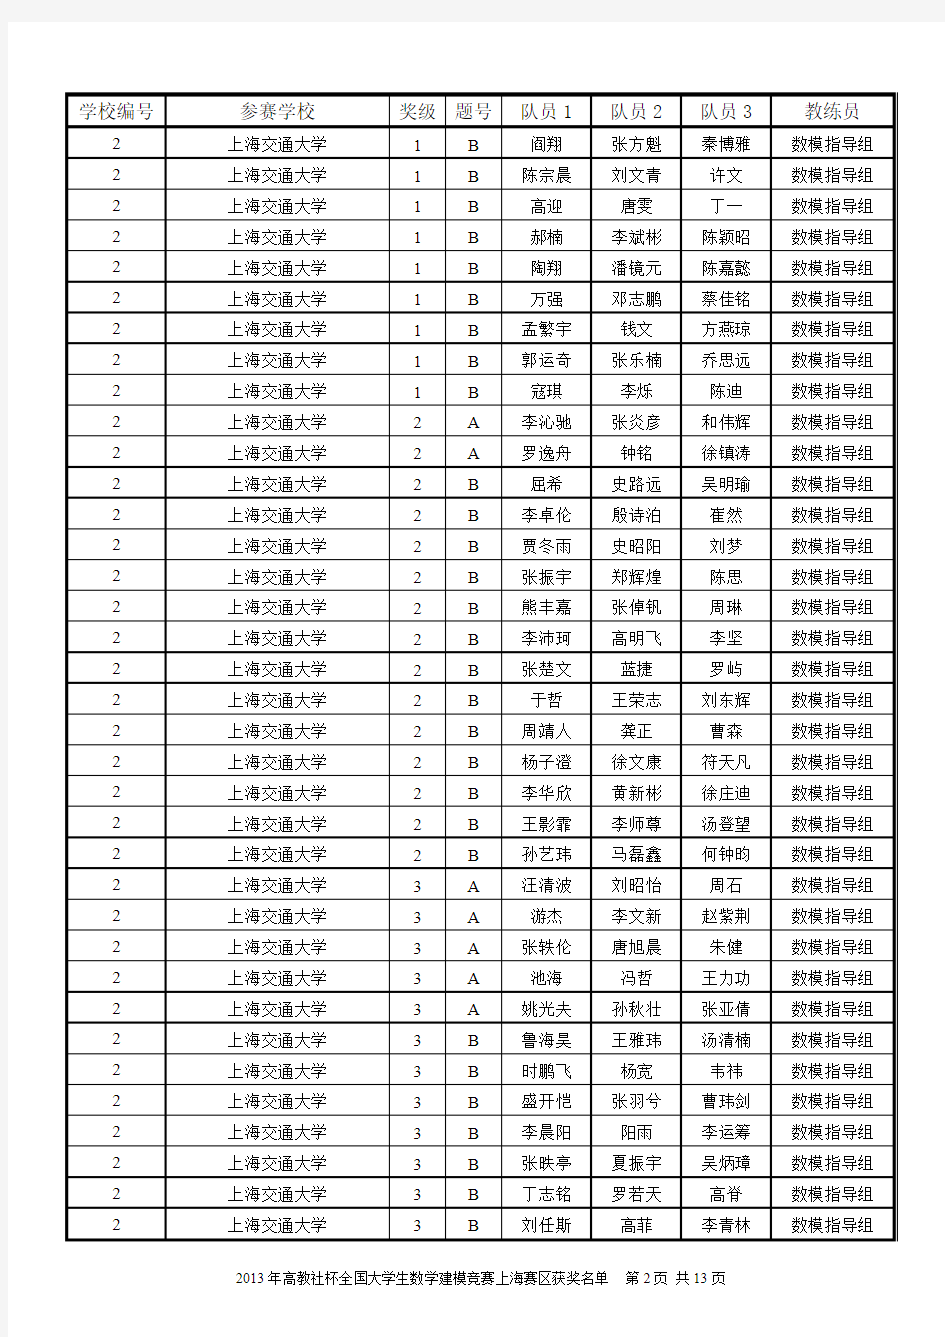 2013 年高教社杯中国大学生数学建模比赛上海获奖名单(公示版)